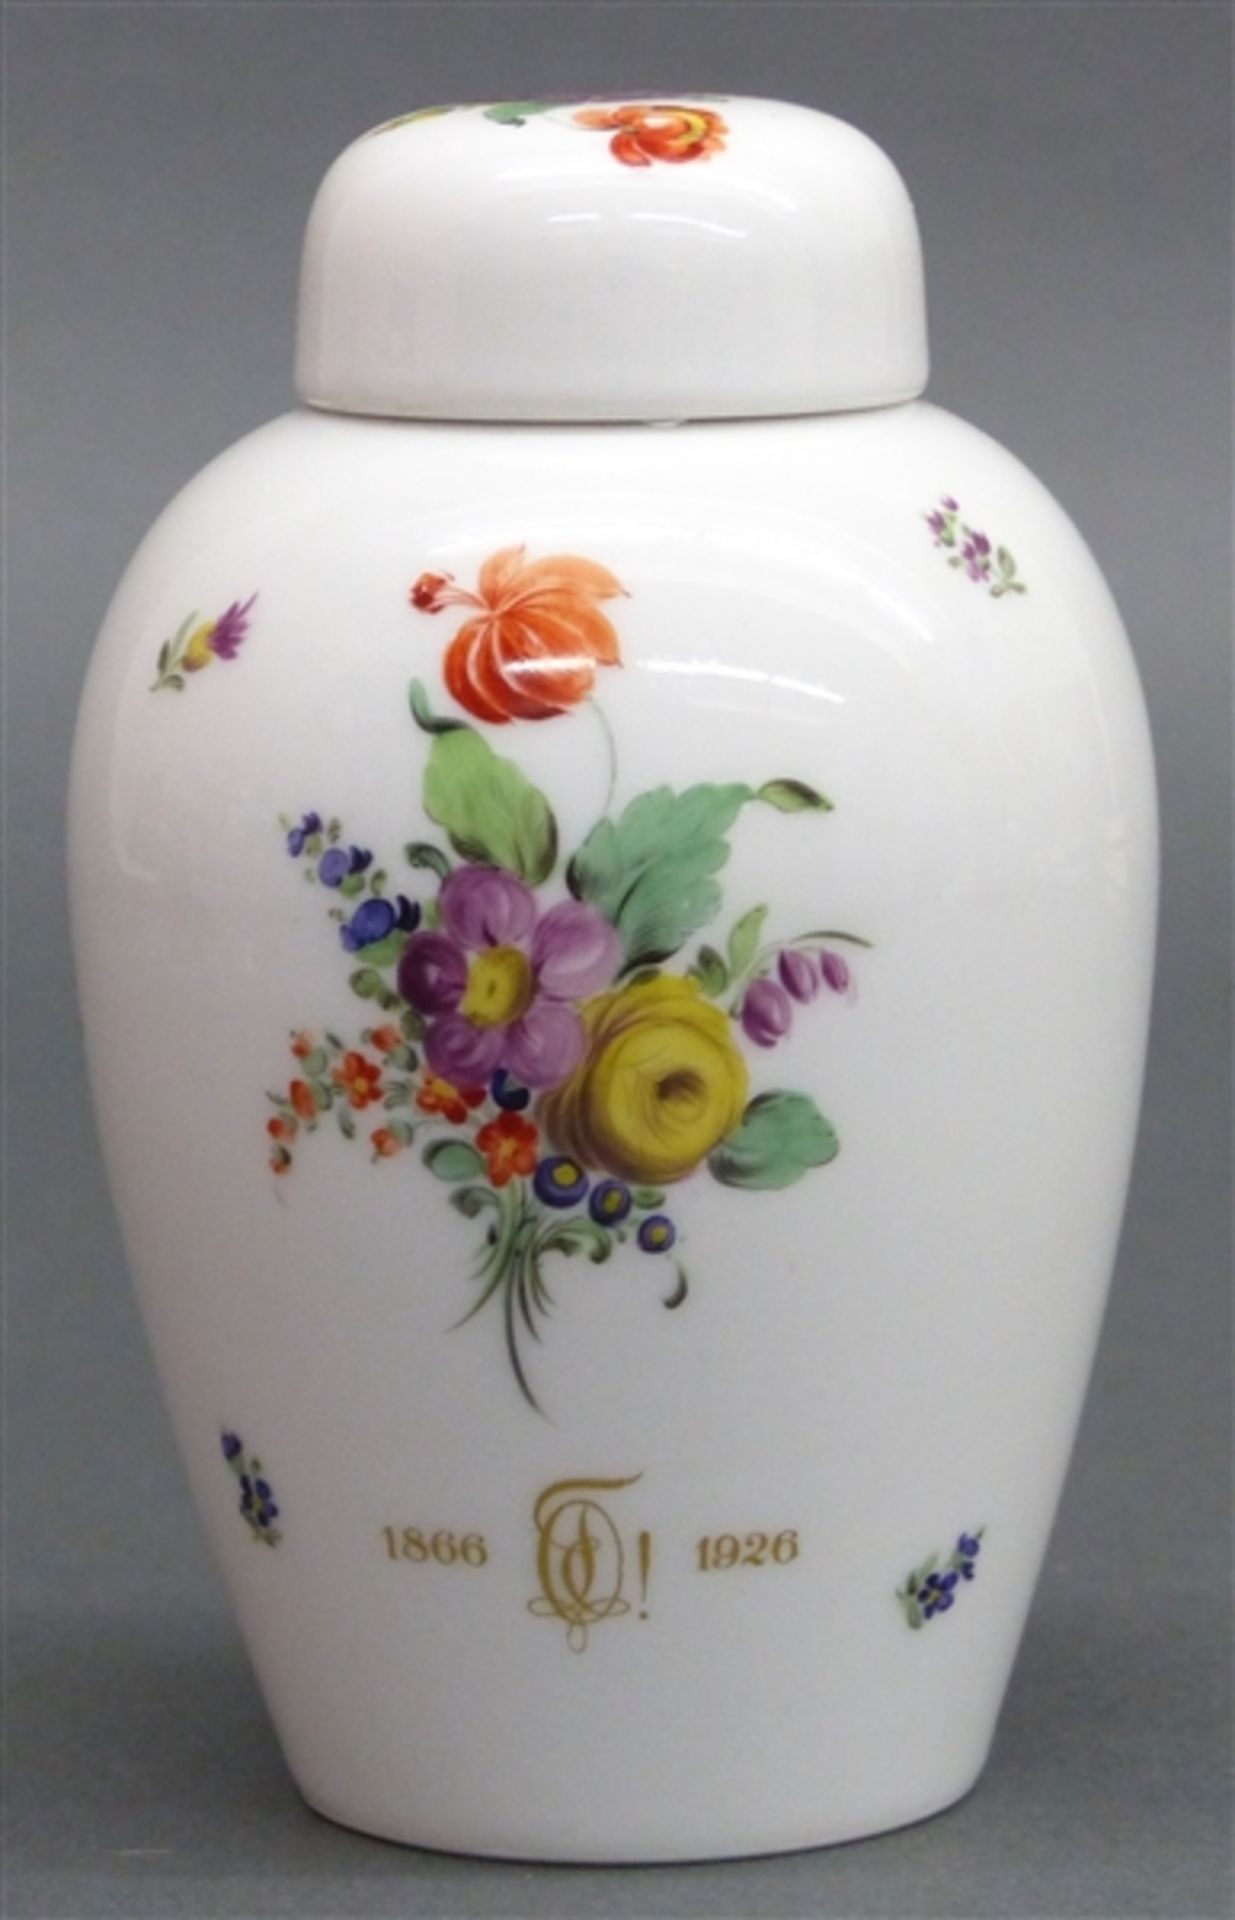 Deckelvase Porzellan, floral bemalt, Edition zu einem 60. Geburtstag, 1866-1926, grüne Bodenmarke,